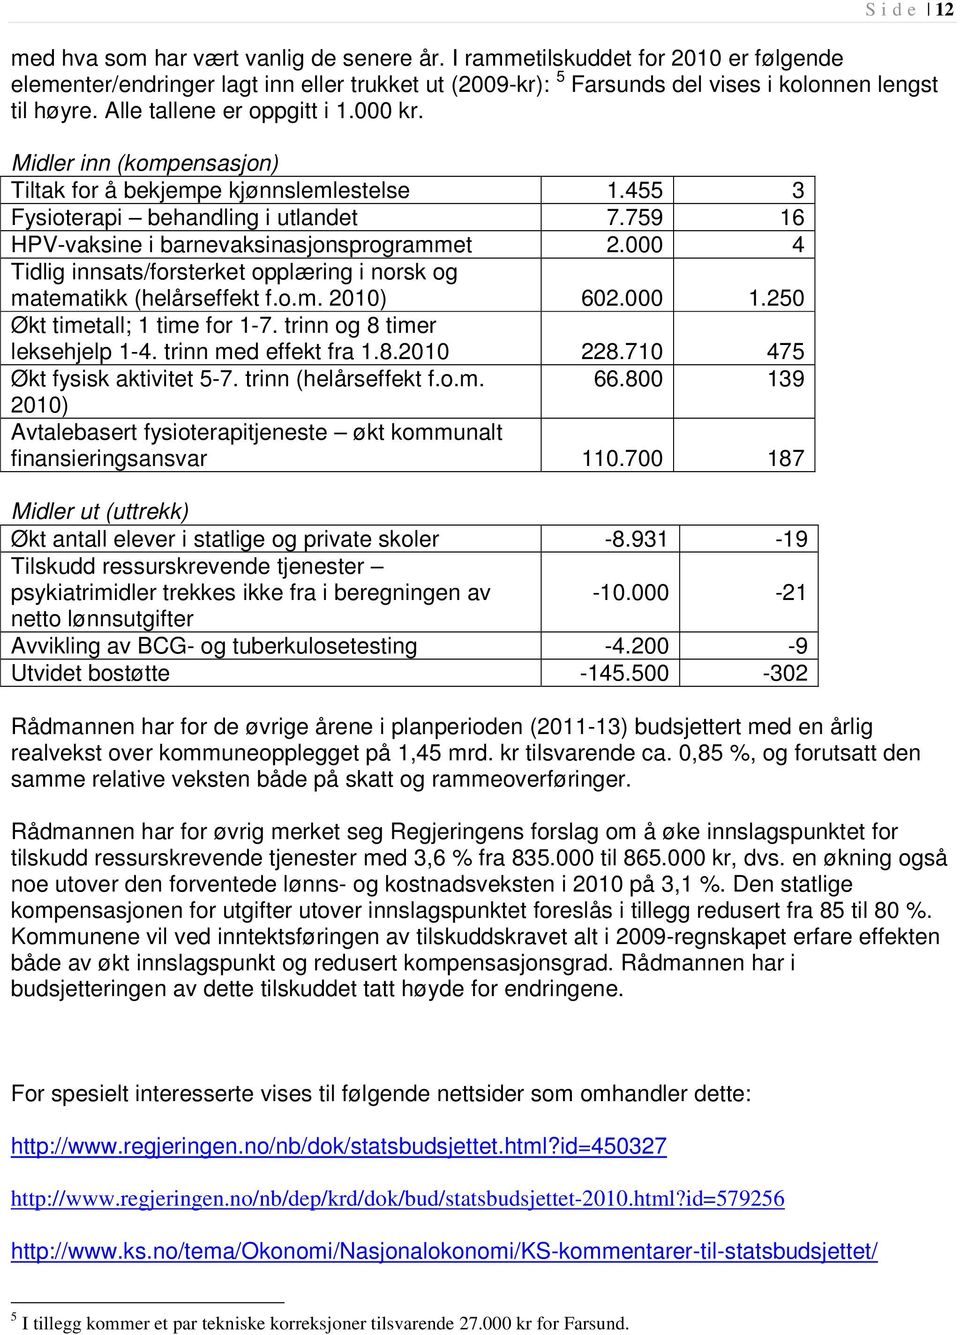 000 4 Tidlig innsats/forsterket opplæring i norsk og matematikk (helårseffekt f.o.m. 2010) 602.000 1.250 Økt timetall; 1 time for 1-7. trinn og 8 timer leksehjelp 1-4. trinn med effekt fra 1.8.2010 228.